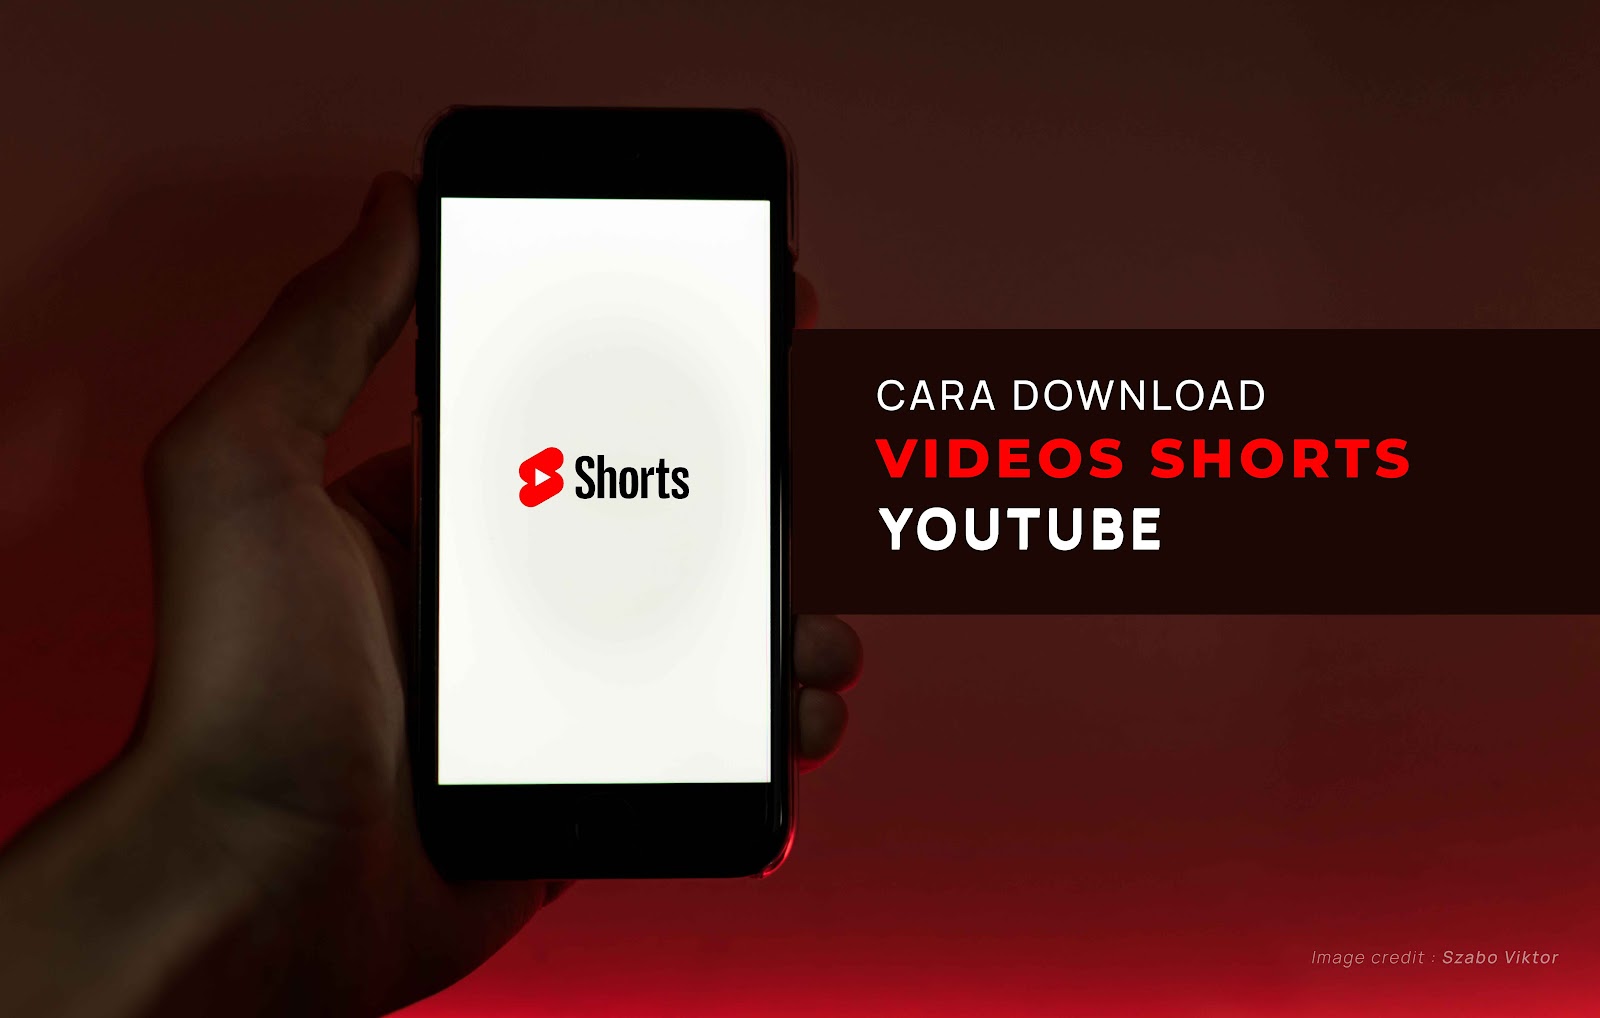 Cara Download Video Youtube Shorts Untuk di Tonton Offline